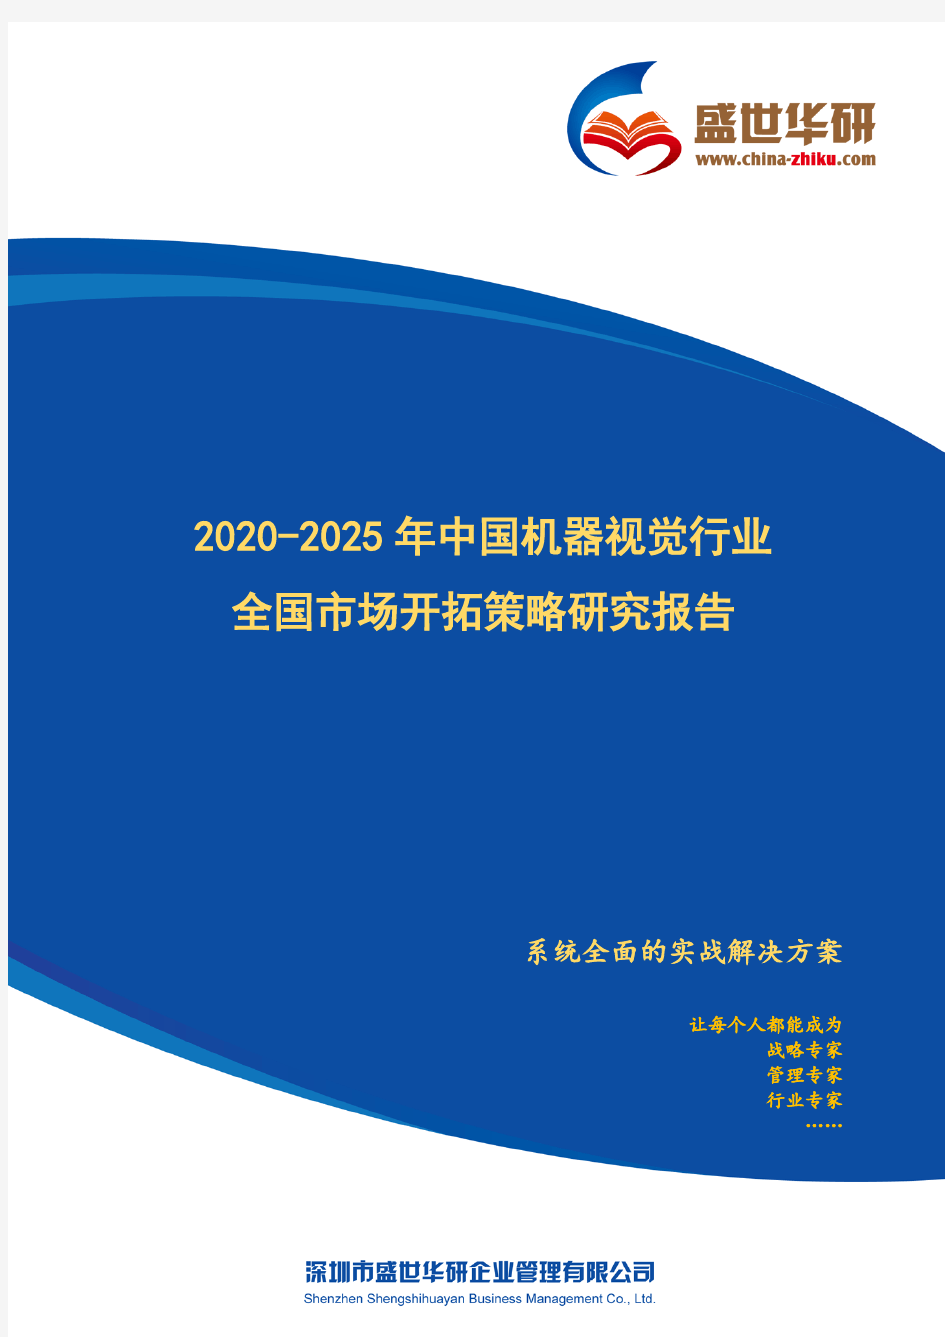 【完整版】2020-2025年中国机器视觉行业全国市场开拓策略研究报告